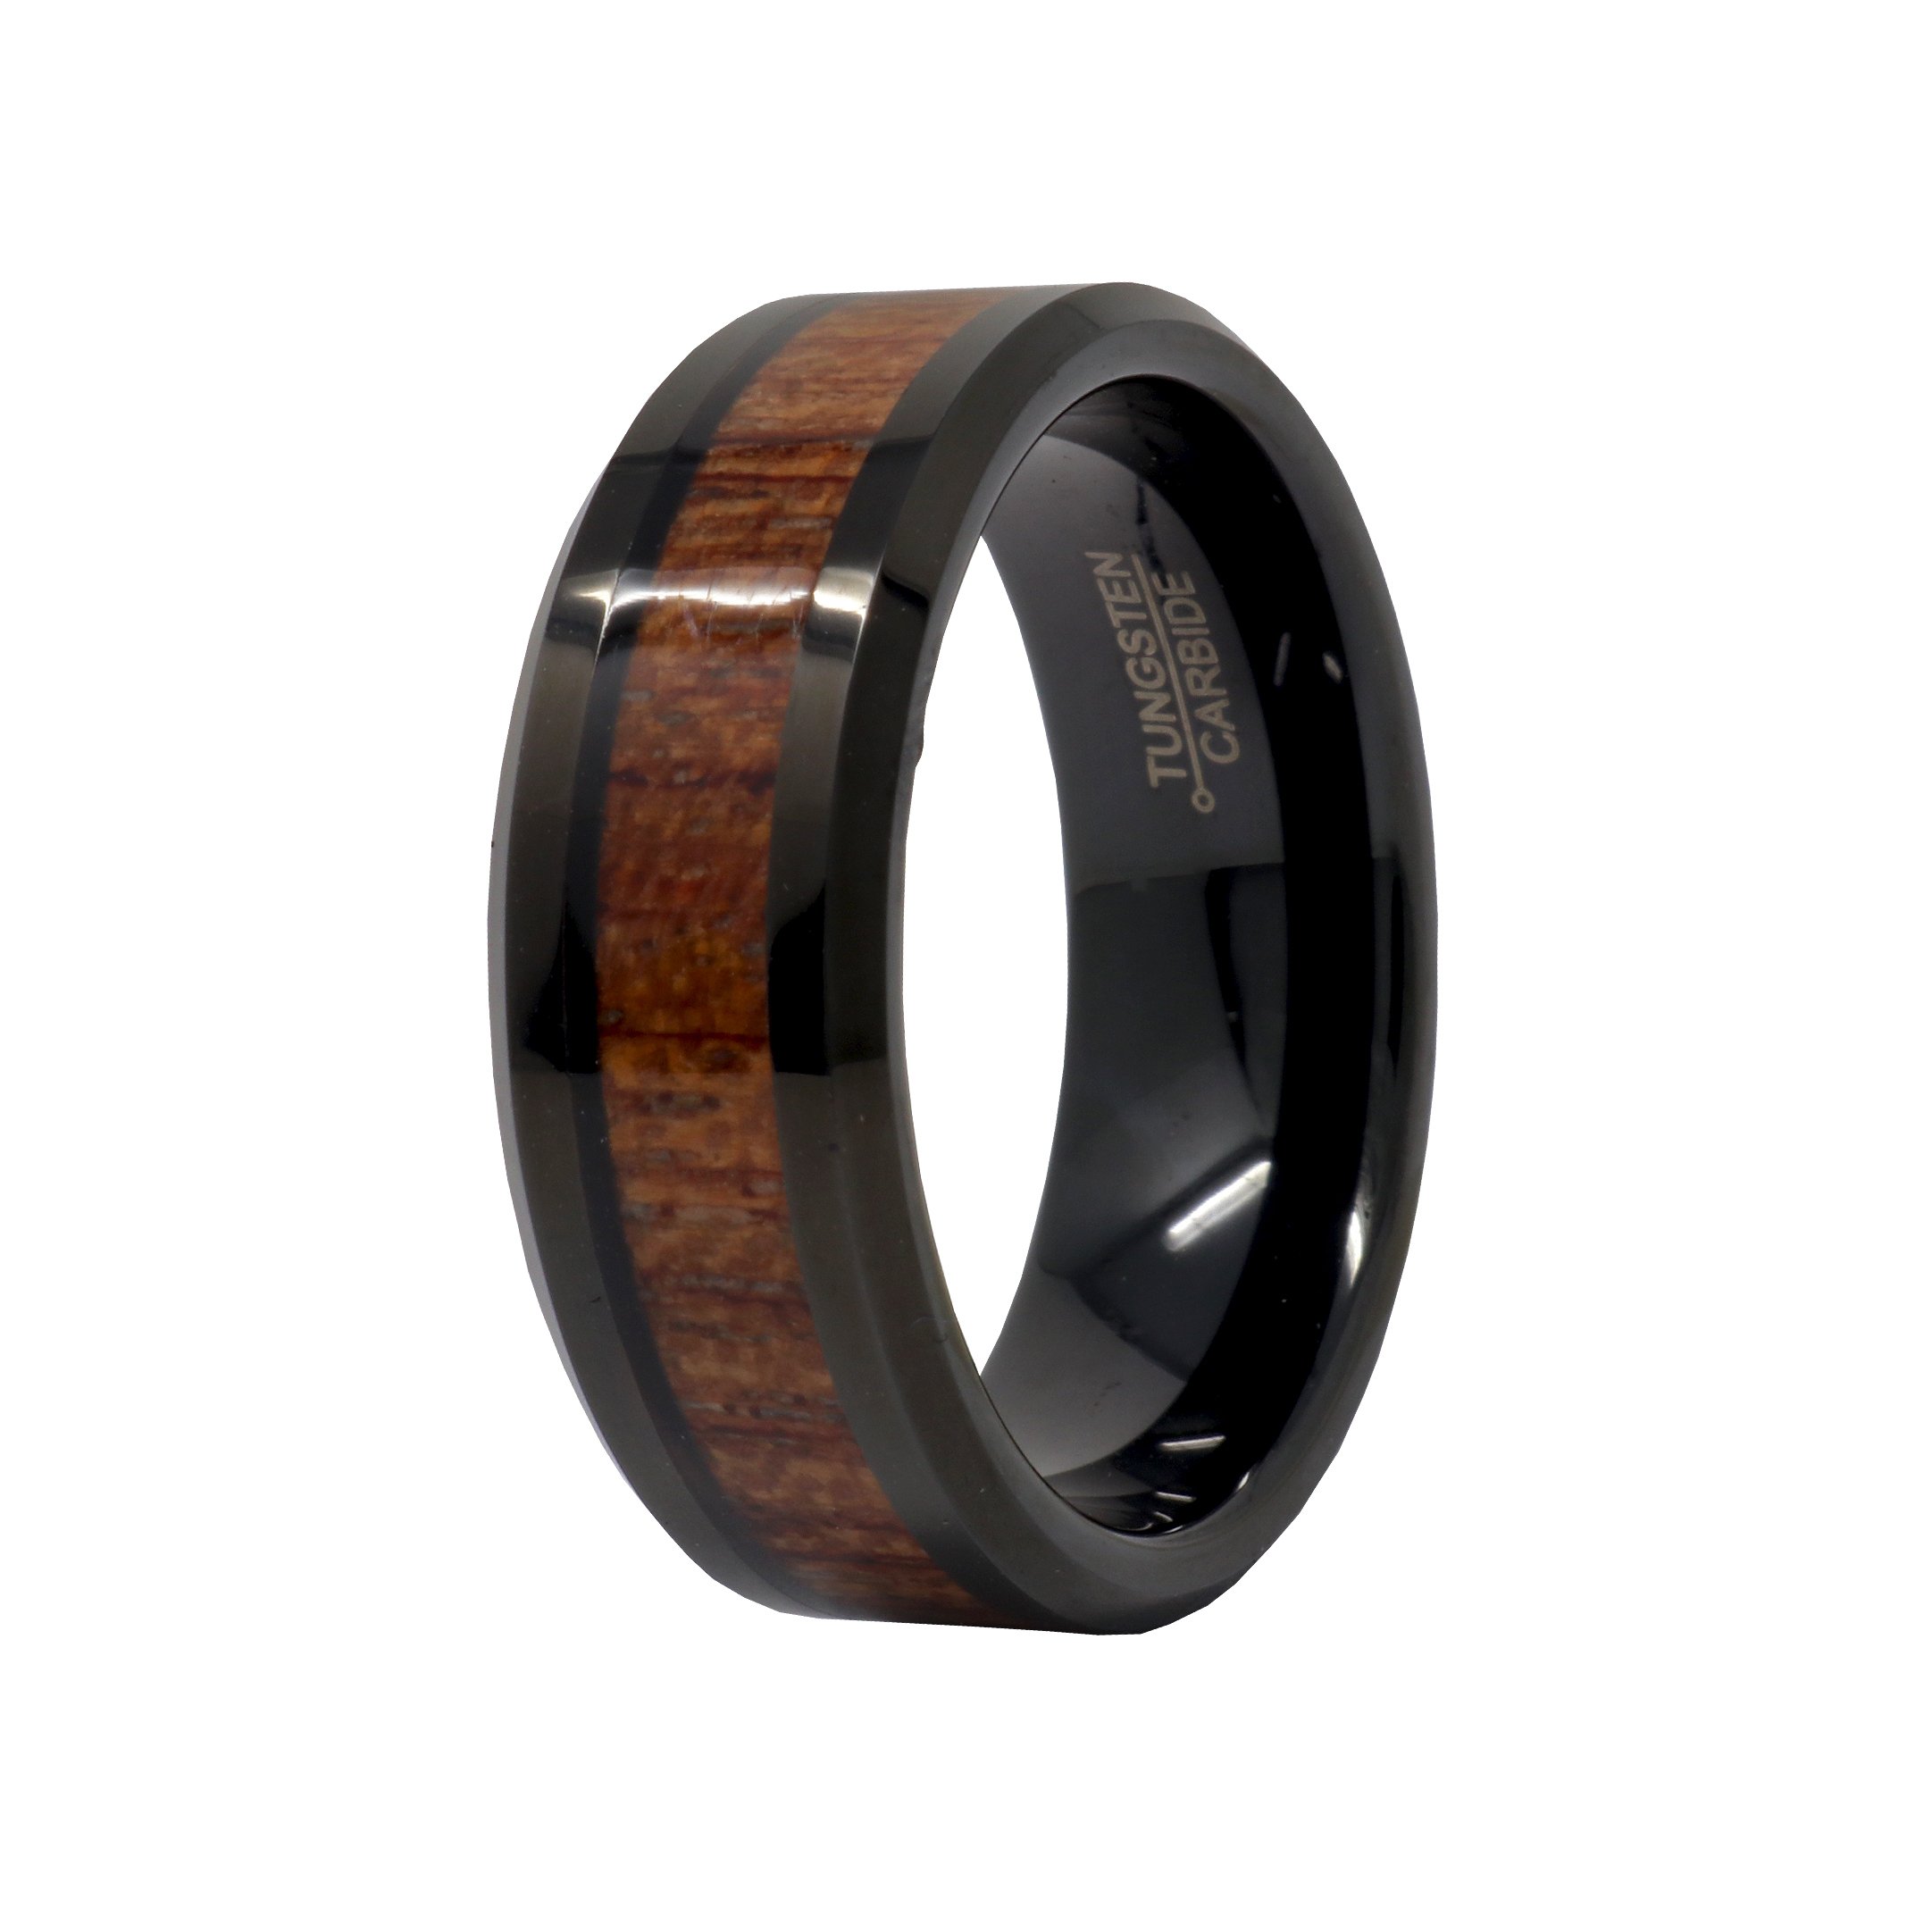 Tungsten Ring Size 15 - 8mm Black Ip Plated With Hawaiian Koa Wood Inlay